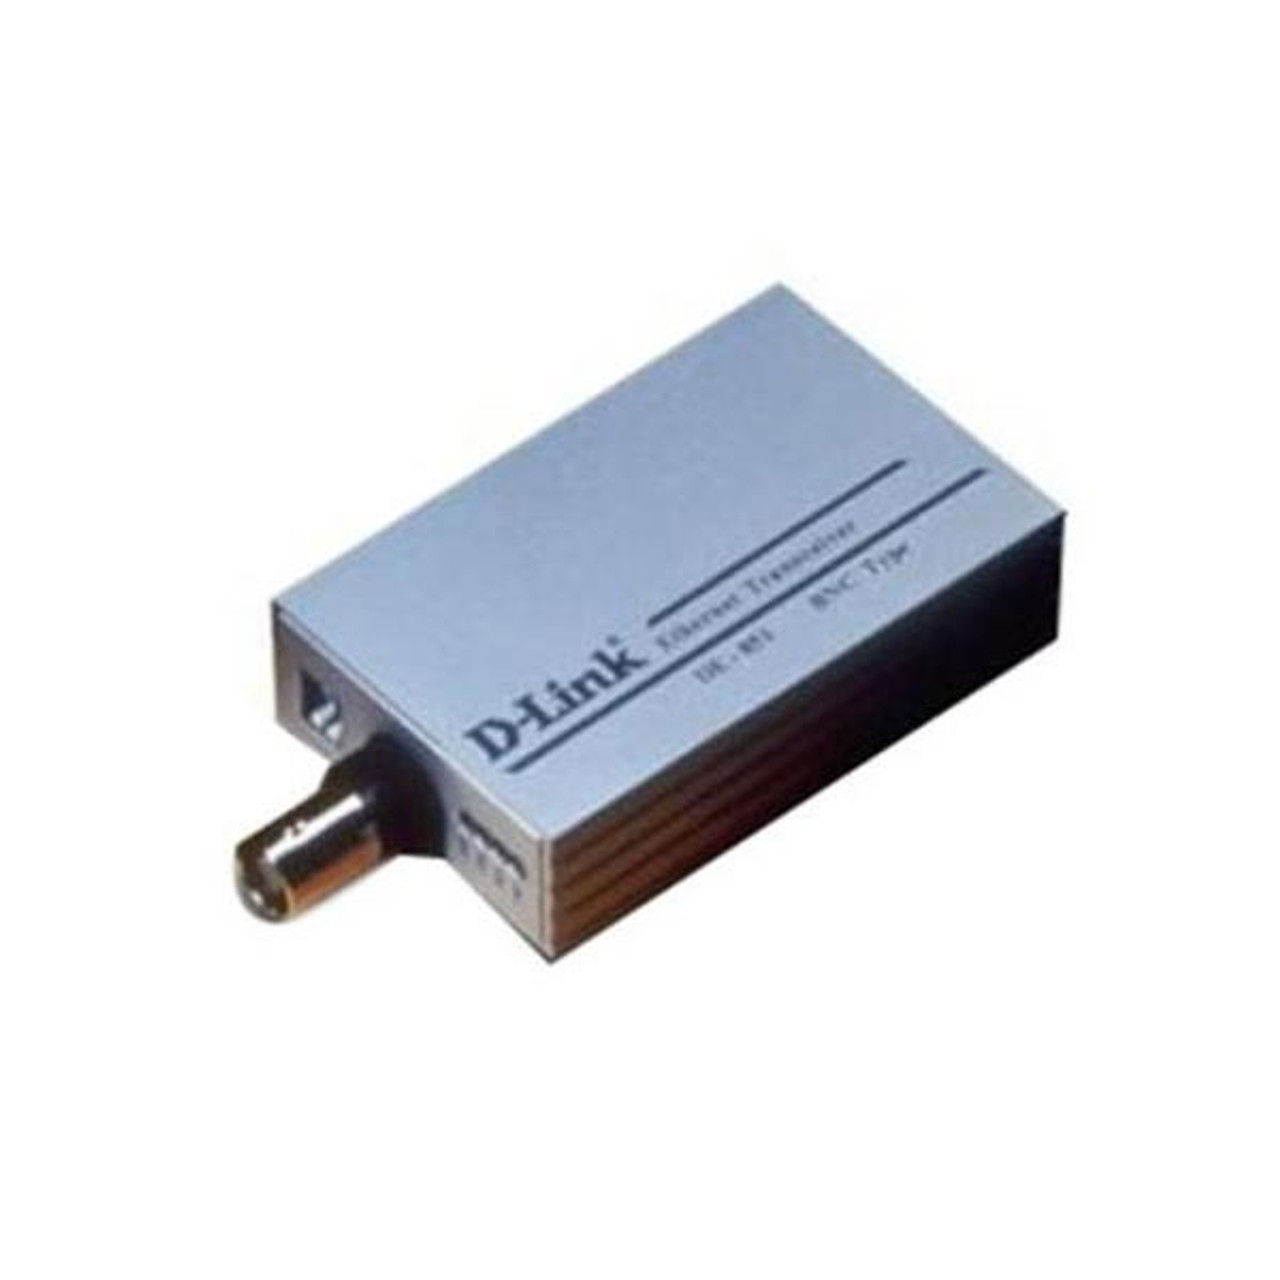 DE-851 D-Link DE-851 Ethernet Transciever 1 x RJ-45 , 1 x AUI 10Base-2 External